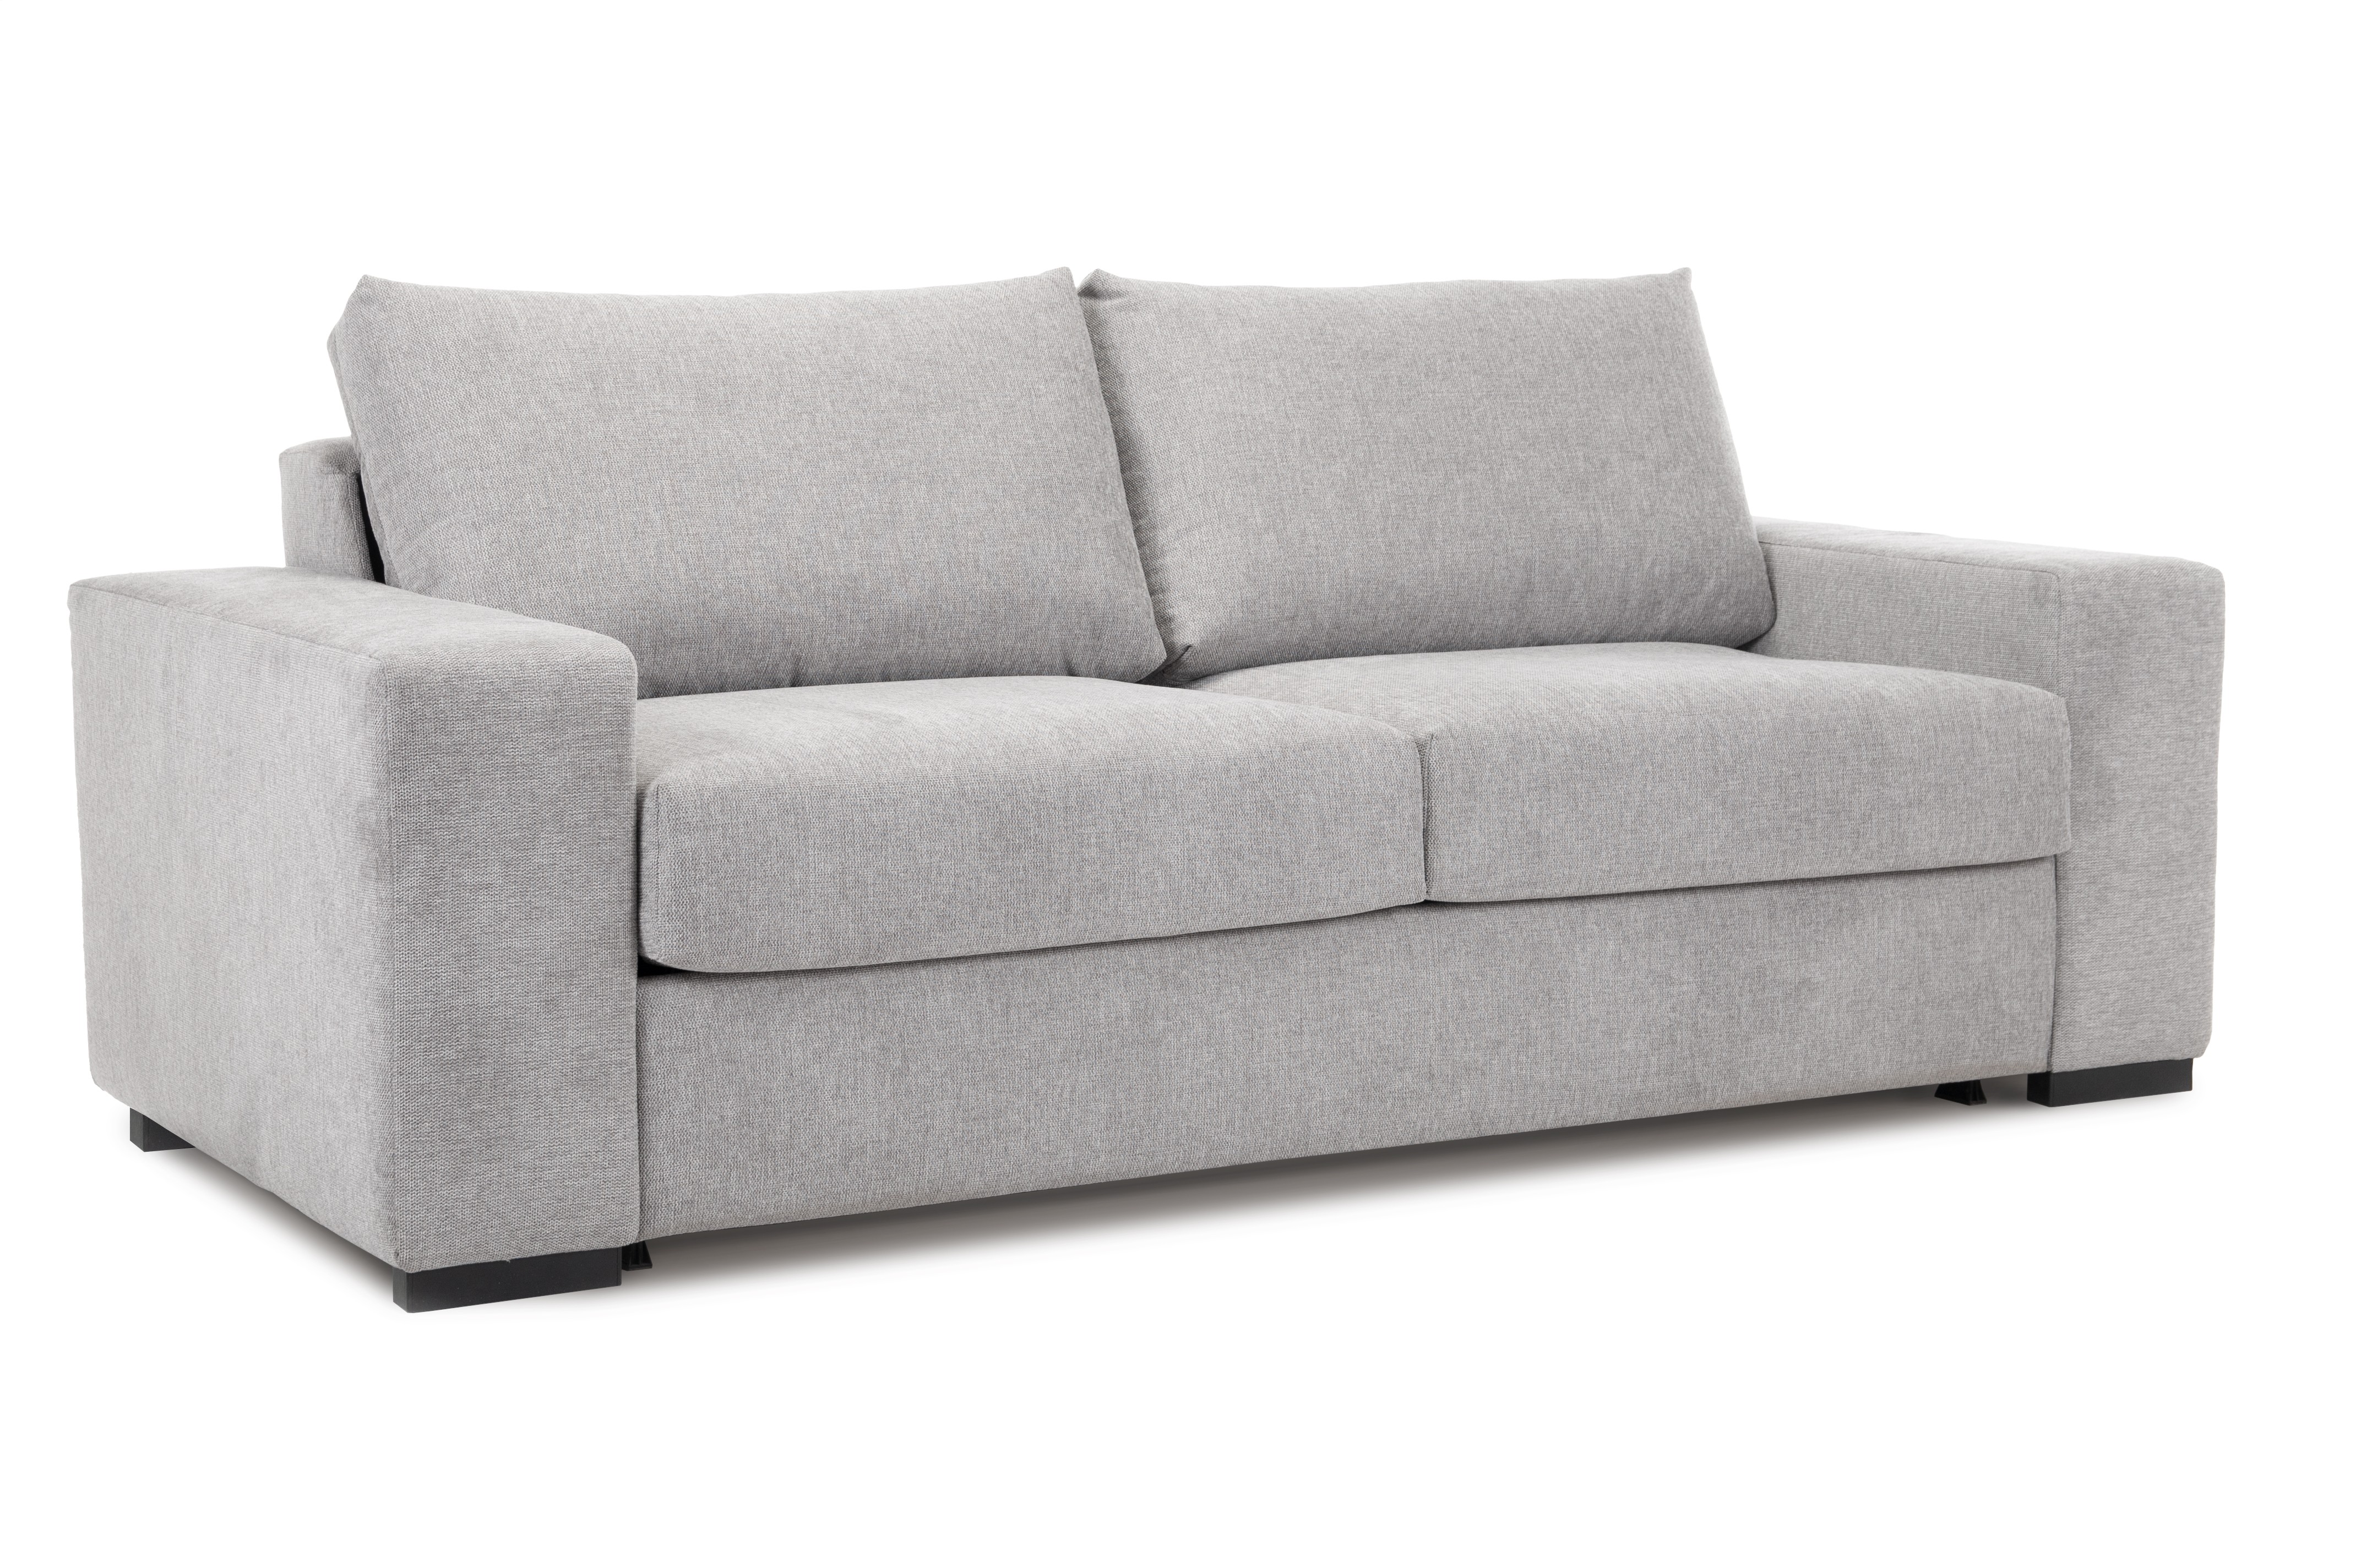 Sofa rozkładana Clasico szara MEBLEX